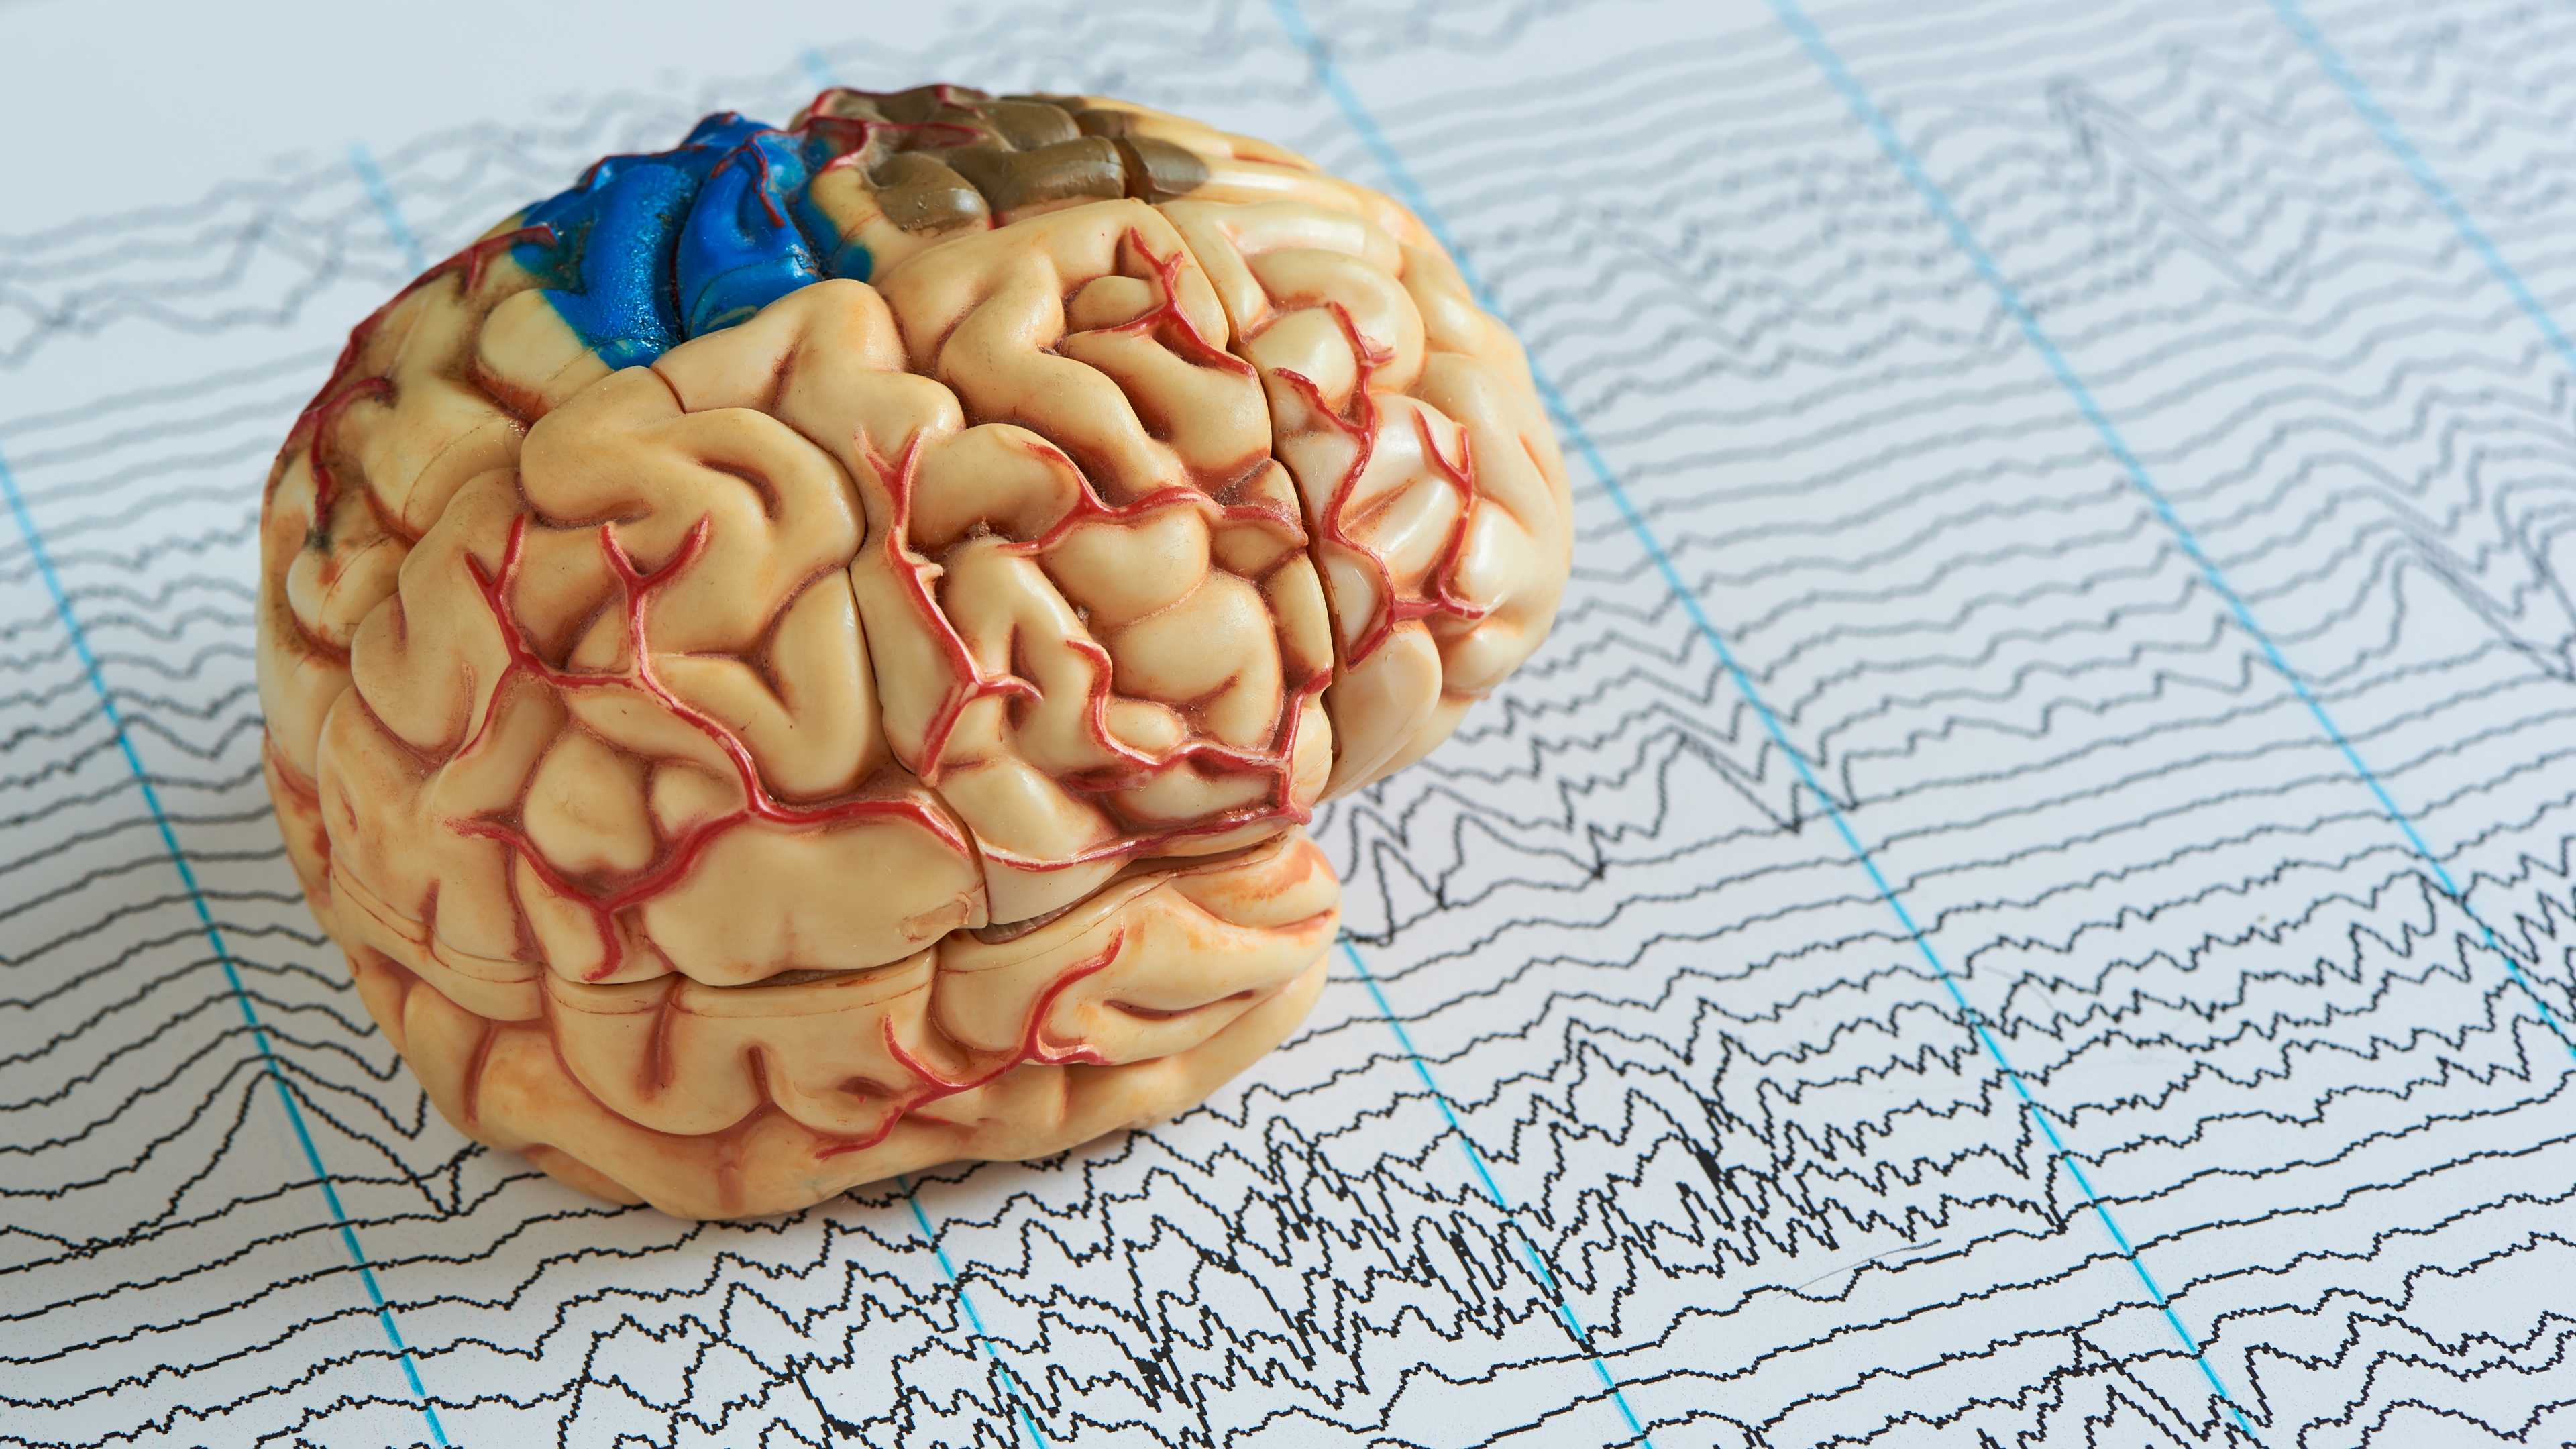 Судороги и провалы в памяти могут быть связаны с одной аномалией в мозгу при эпилепсии